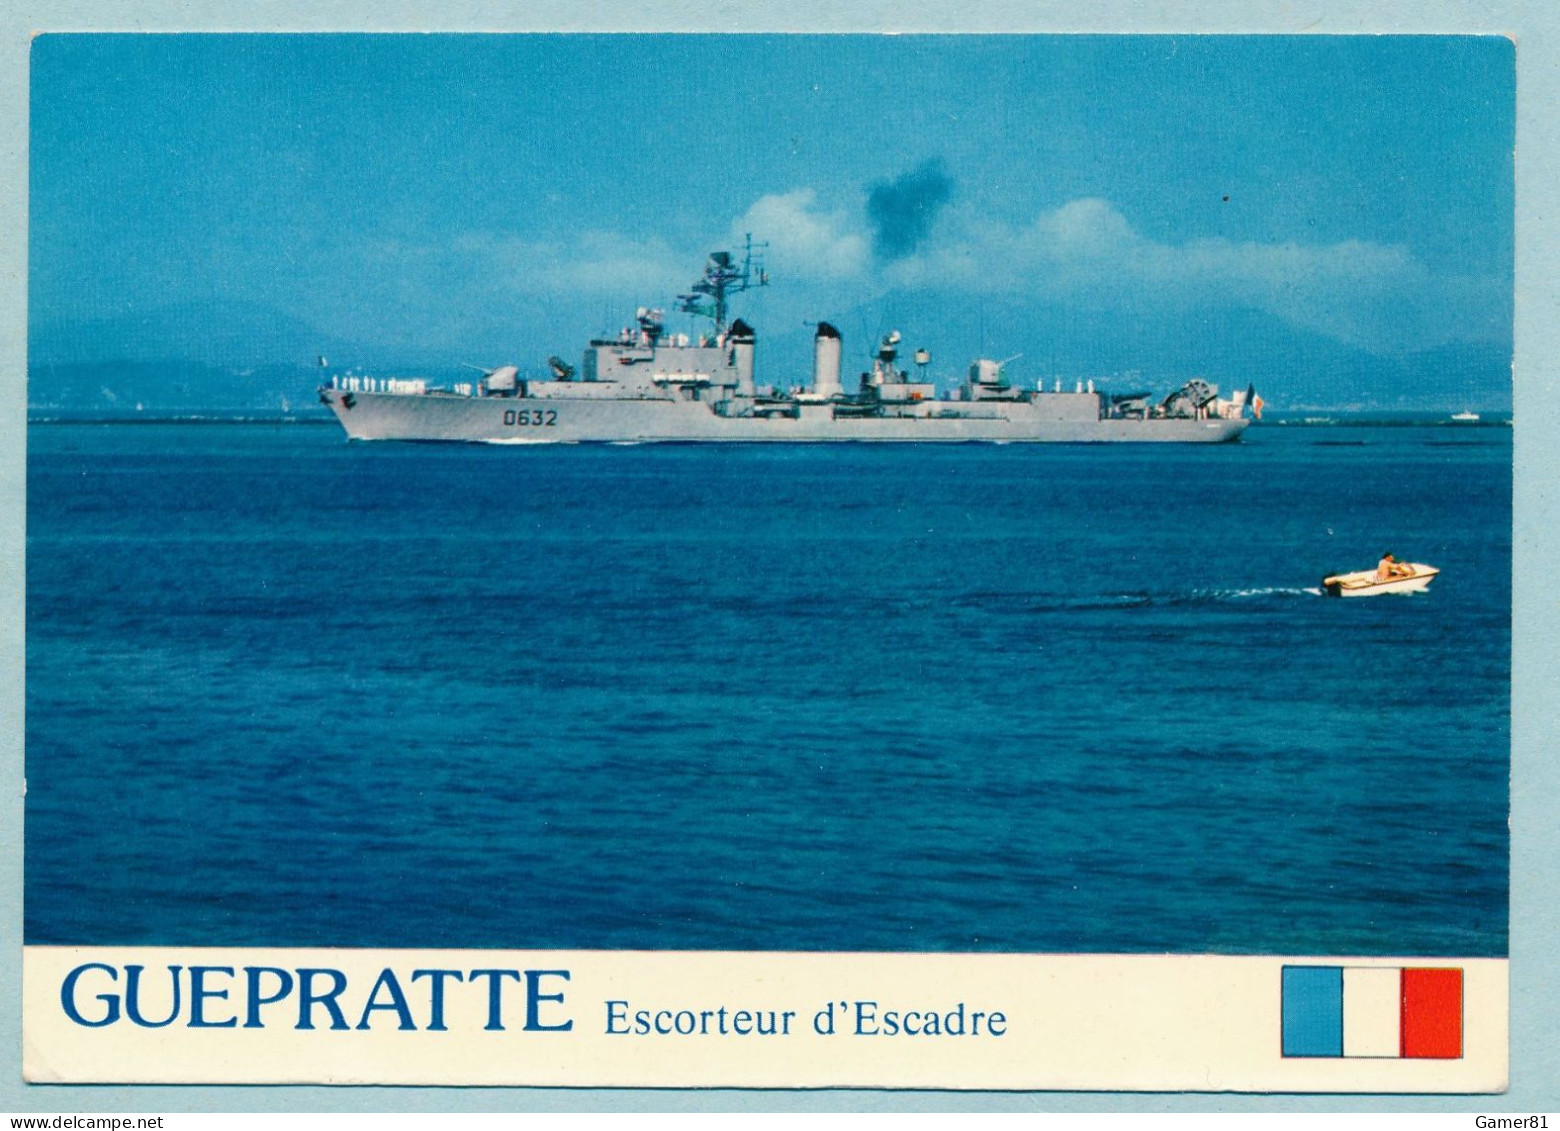 GUEPRATTE Escorteur D'Escadre 2750 Tonnes à TOULON Revue Navale 11/07/1976 Avec Le Pdt Valéry Giscard D'Estaing - Warships